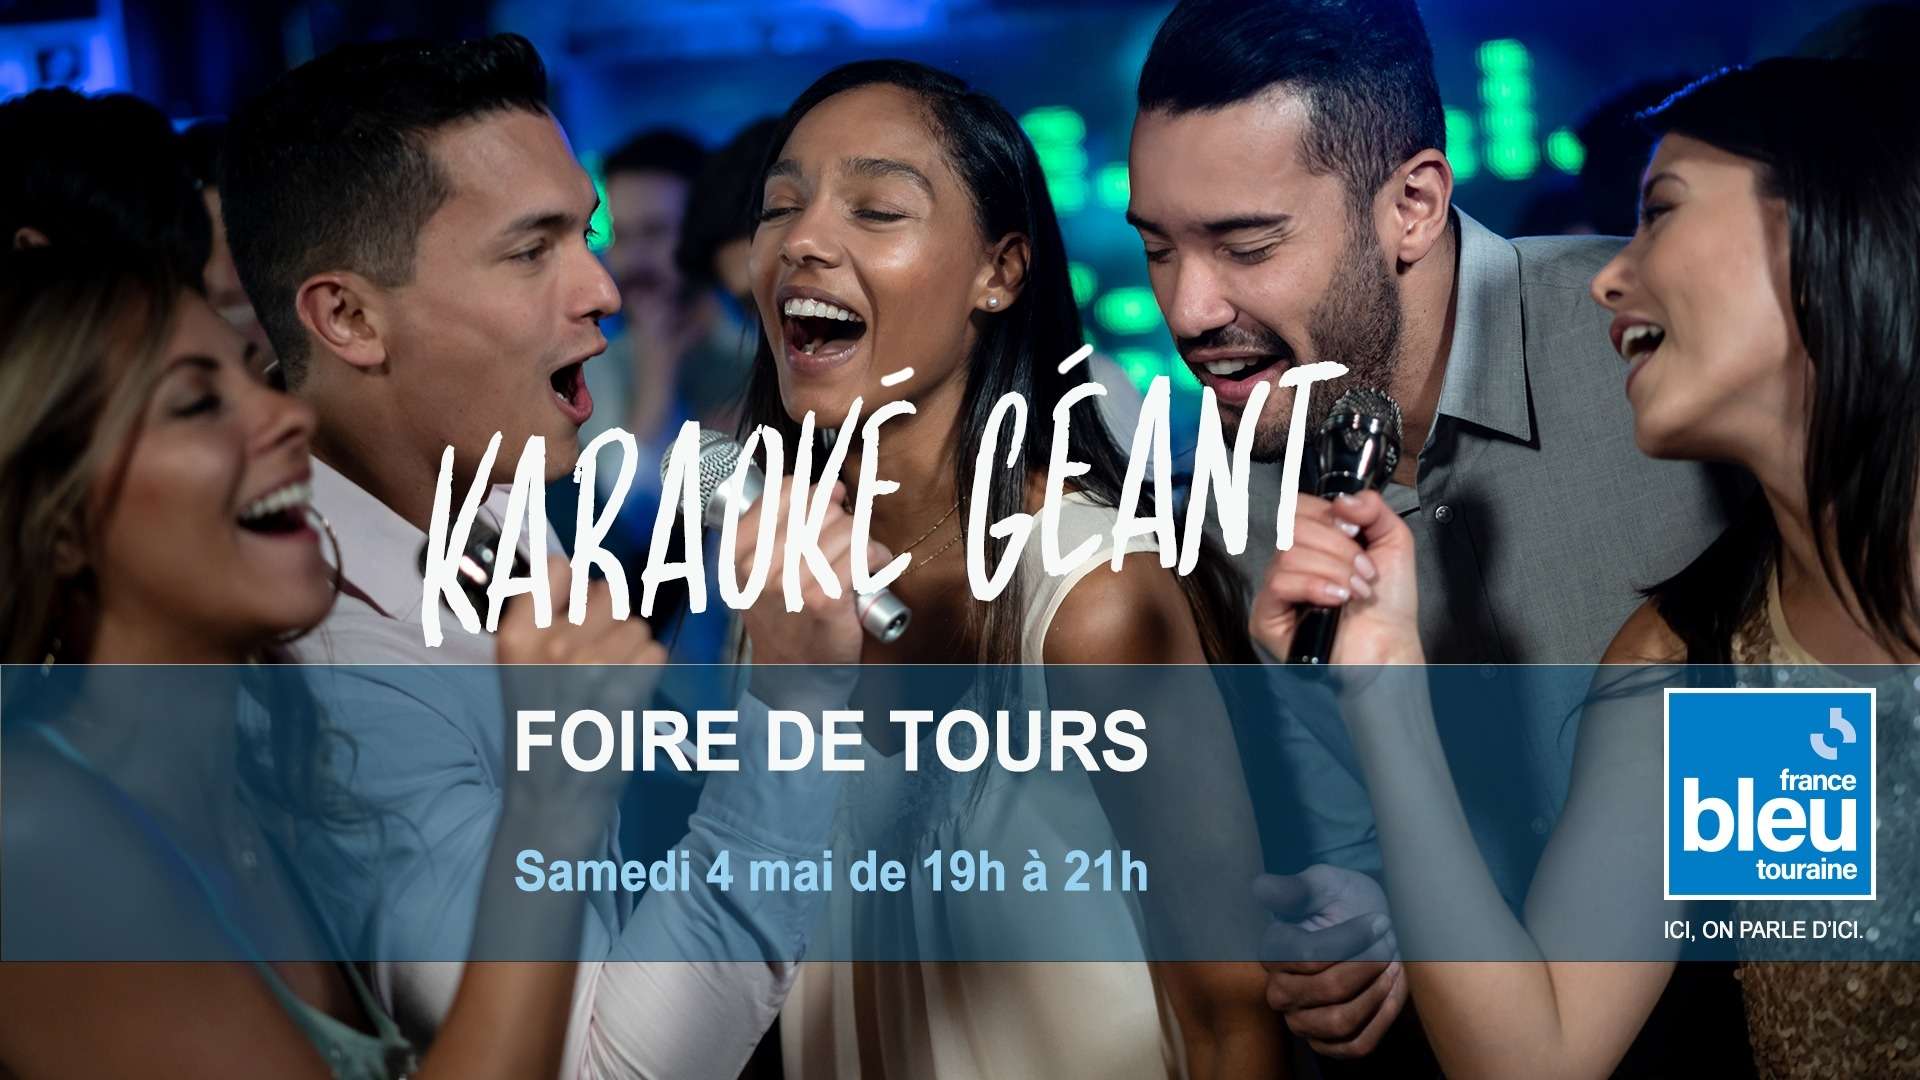 Karaoké Géant de France Bleu Touraine